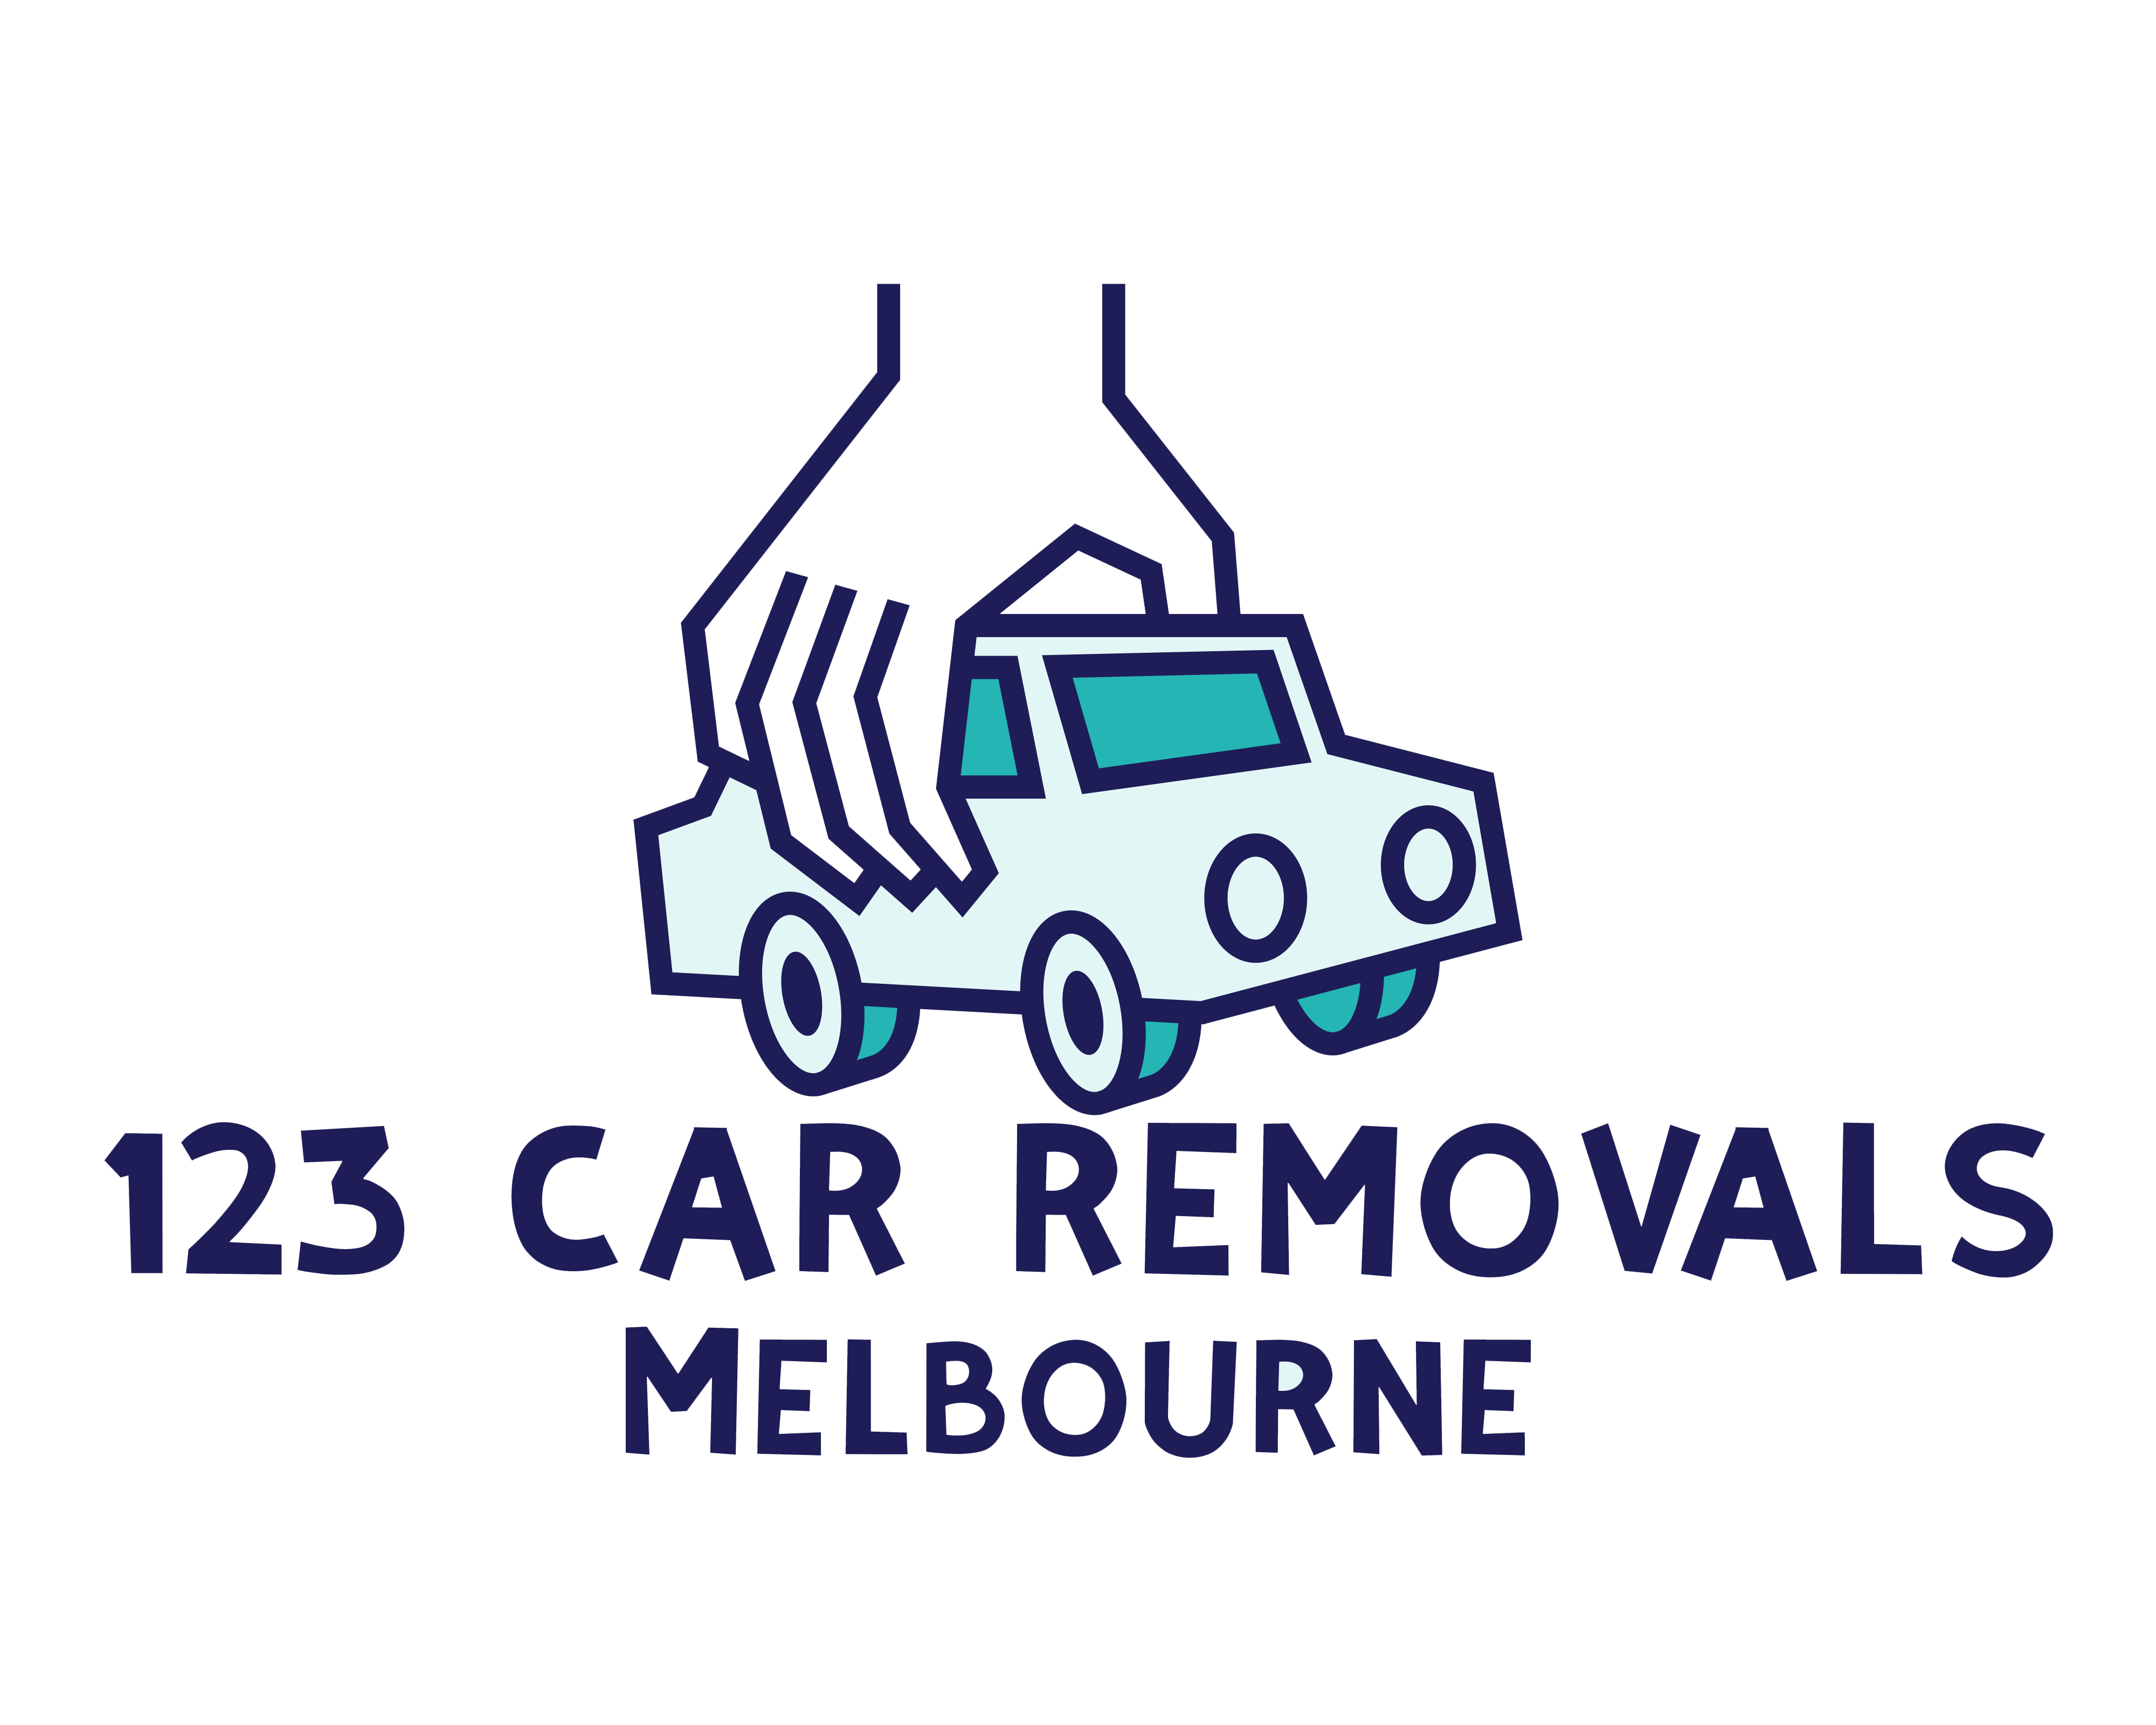 123 Car Removals